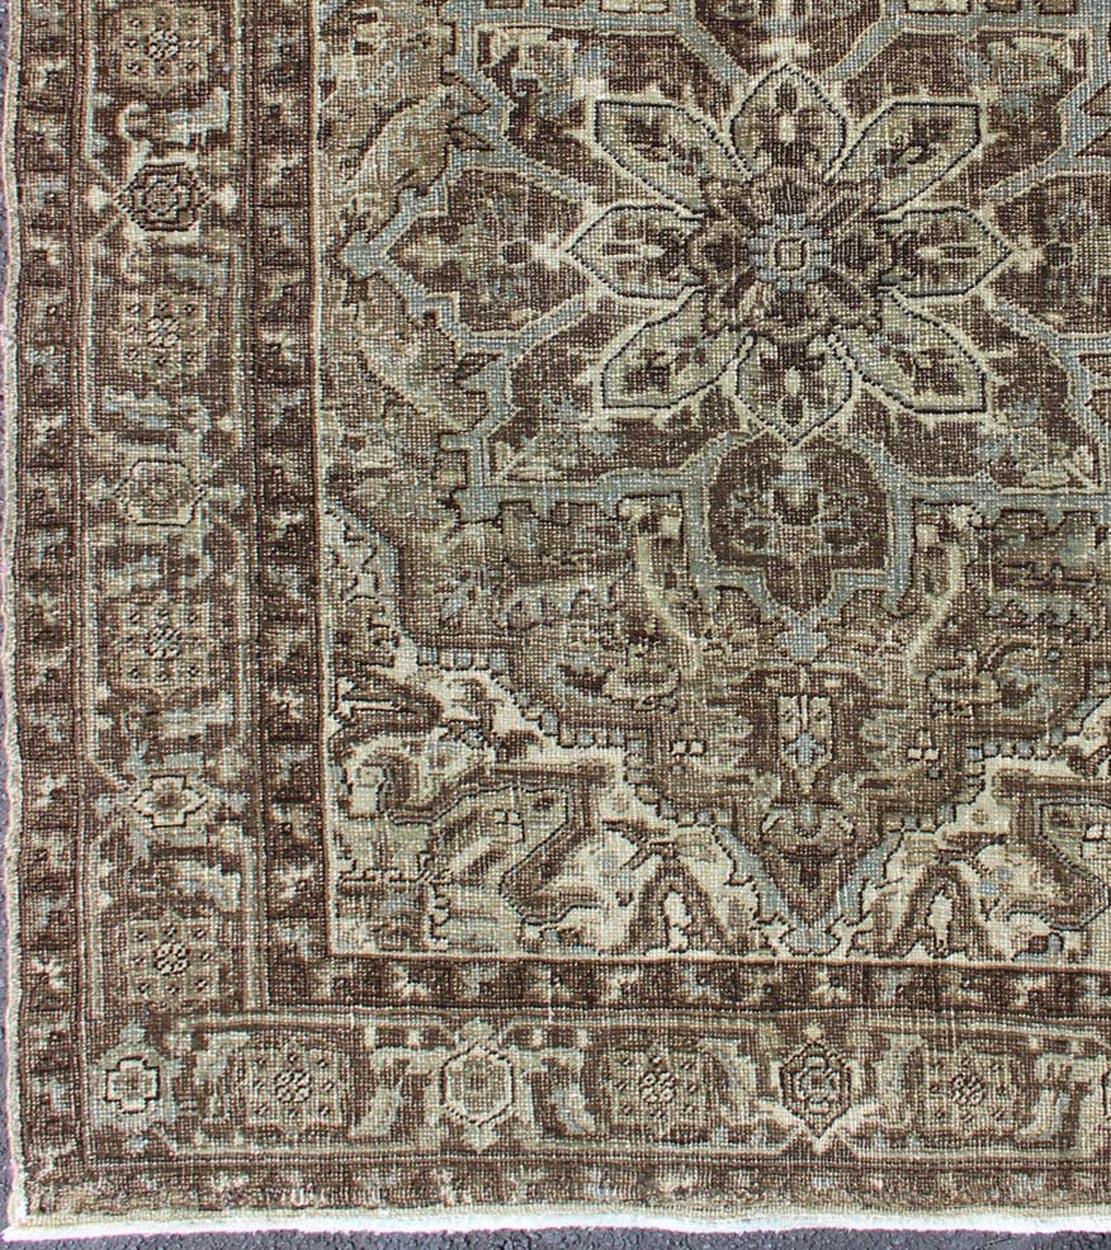 Tapis persan du milieu du siècle avec médaillon et motifs superposés, tapis ca-1171, pays d'origine / type : Iran / Heriz, vers le milieu du 20ème siècle

Ce tapis persan Heriz vintage présente un motif géométrique sombre aux tons naturels. Le